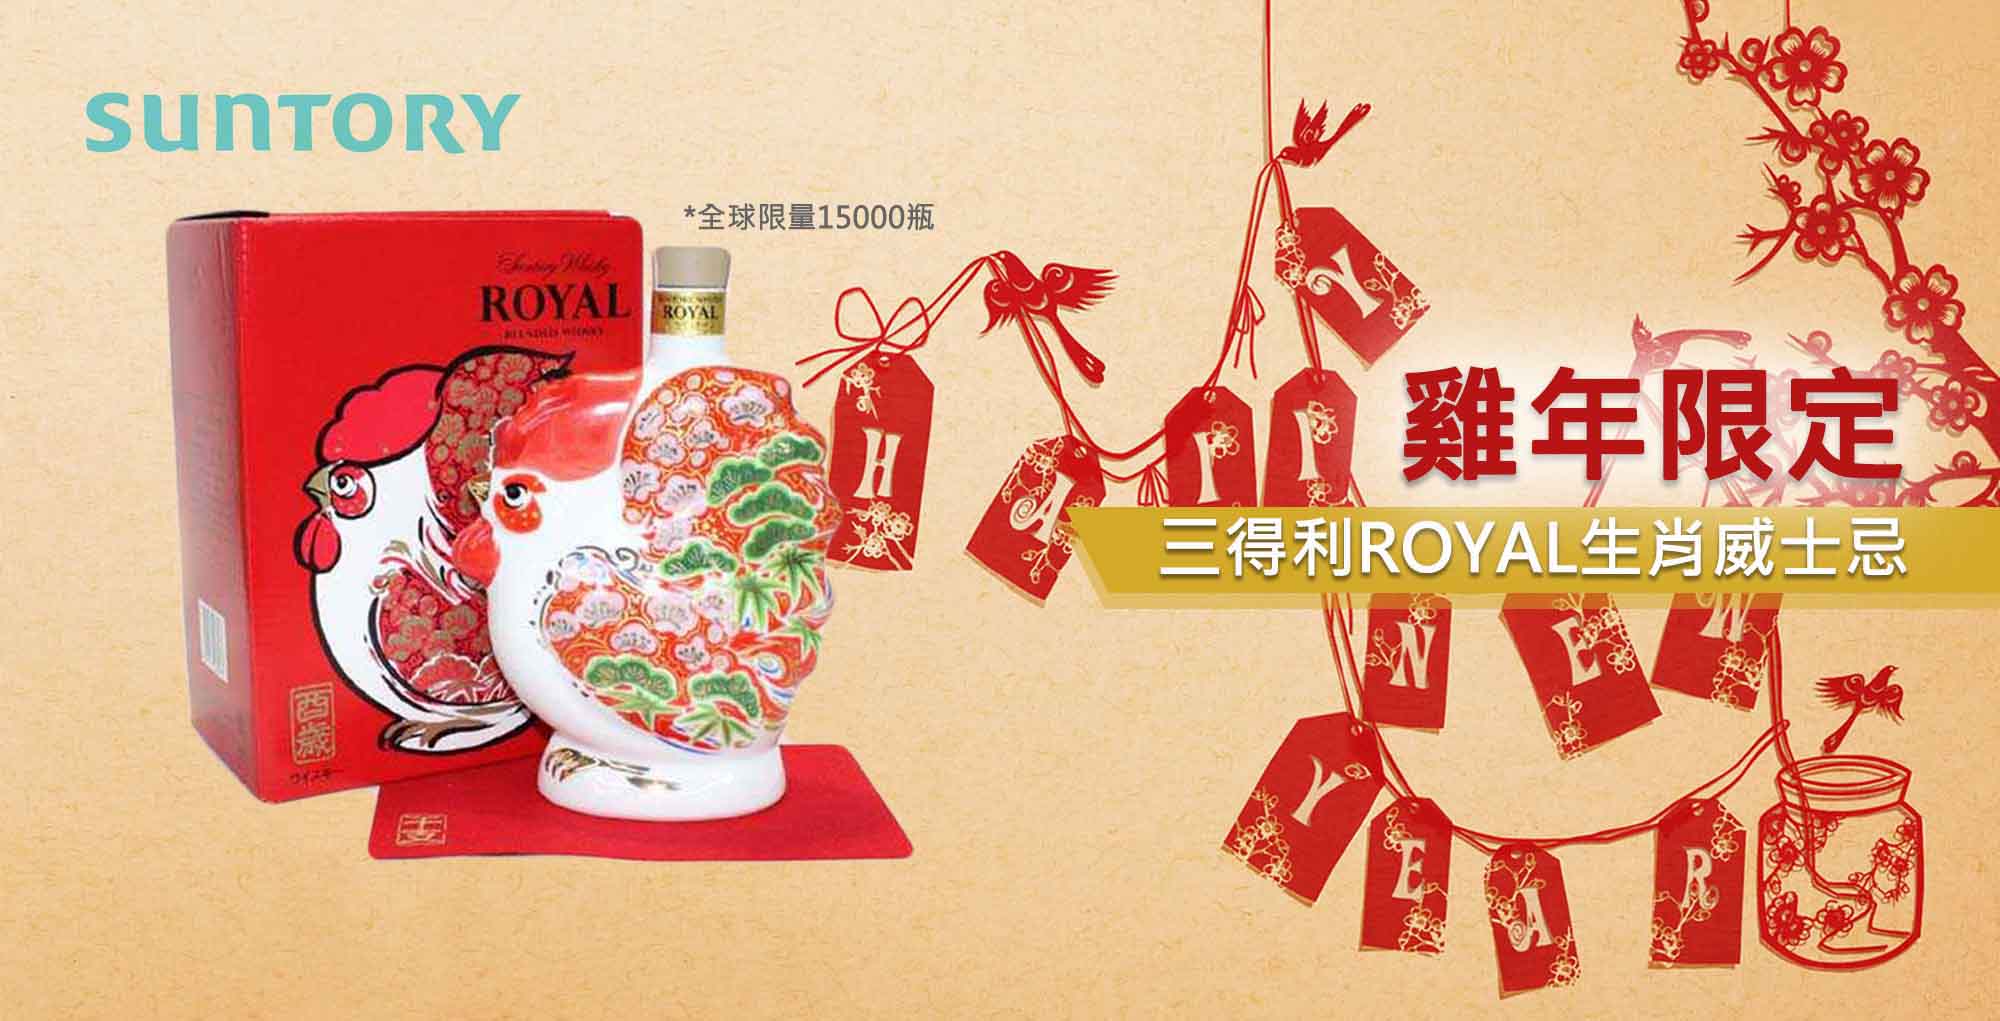  日本威士忌  三得利雞年限定ROYAL| 生肖酒 - Outlet Express HK生活百貨城